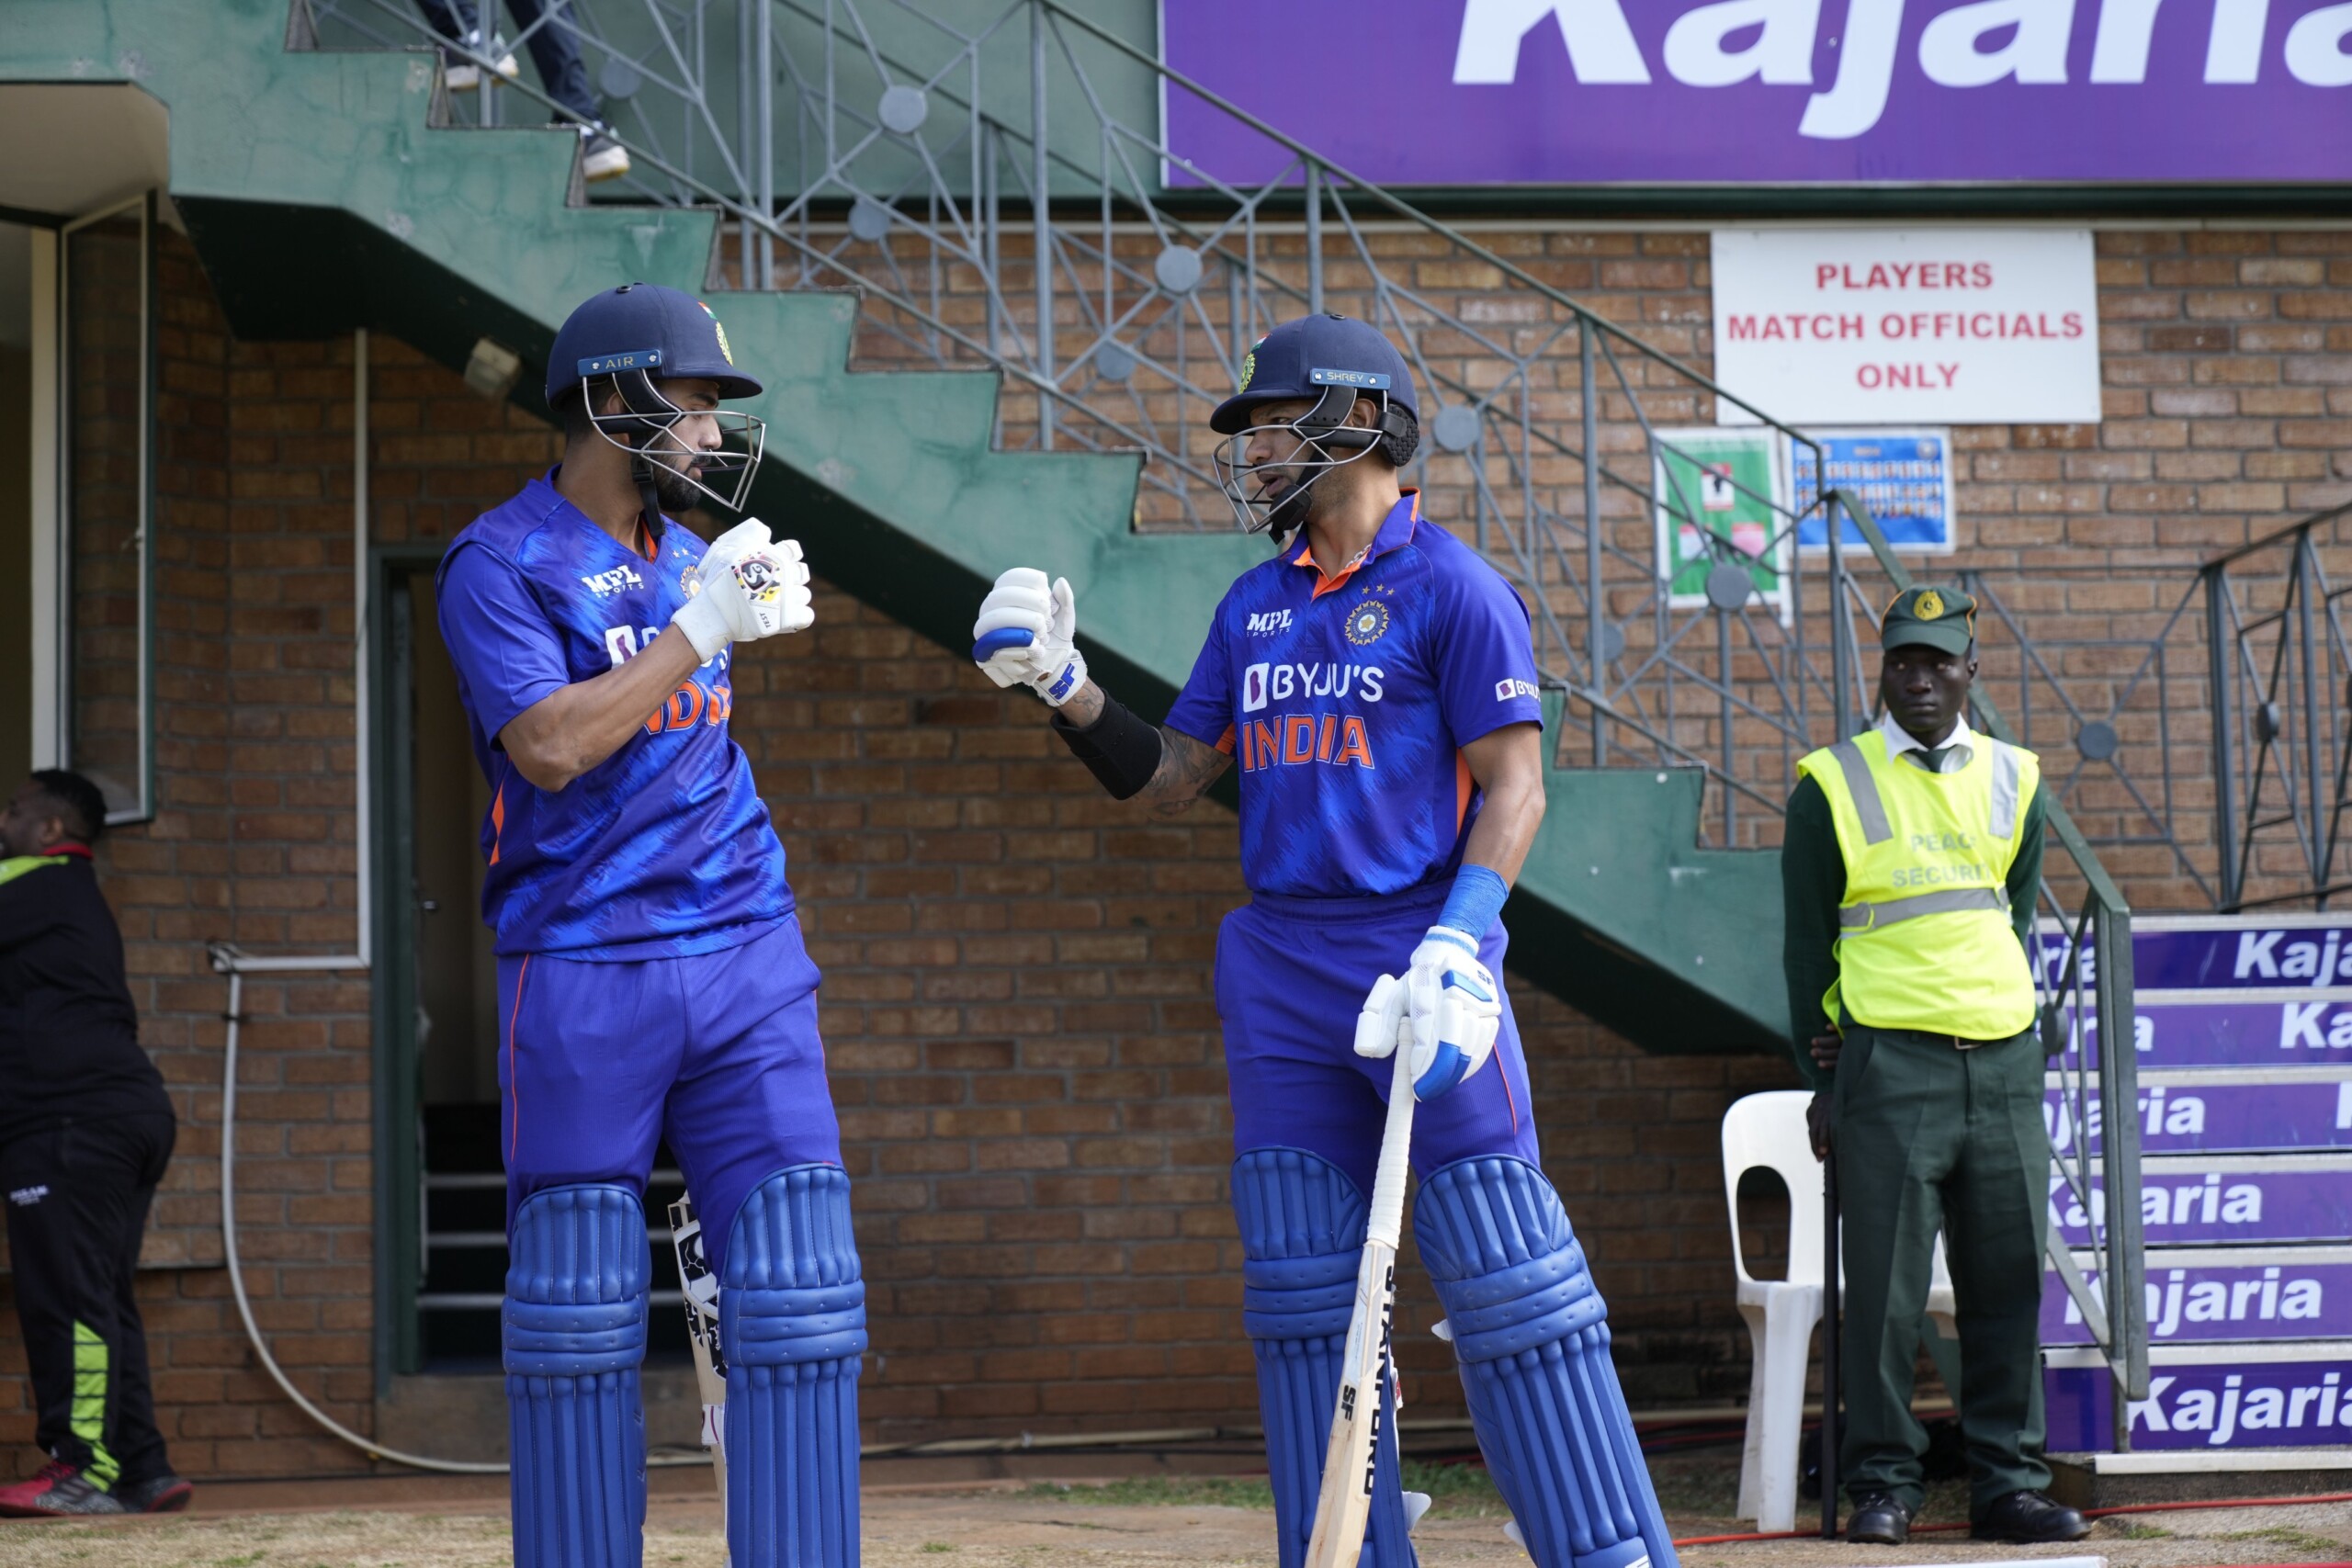 भारत ने तीसरे वनडे में जिम्बाब्वे को 13 रनों से हराया